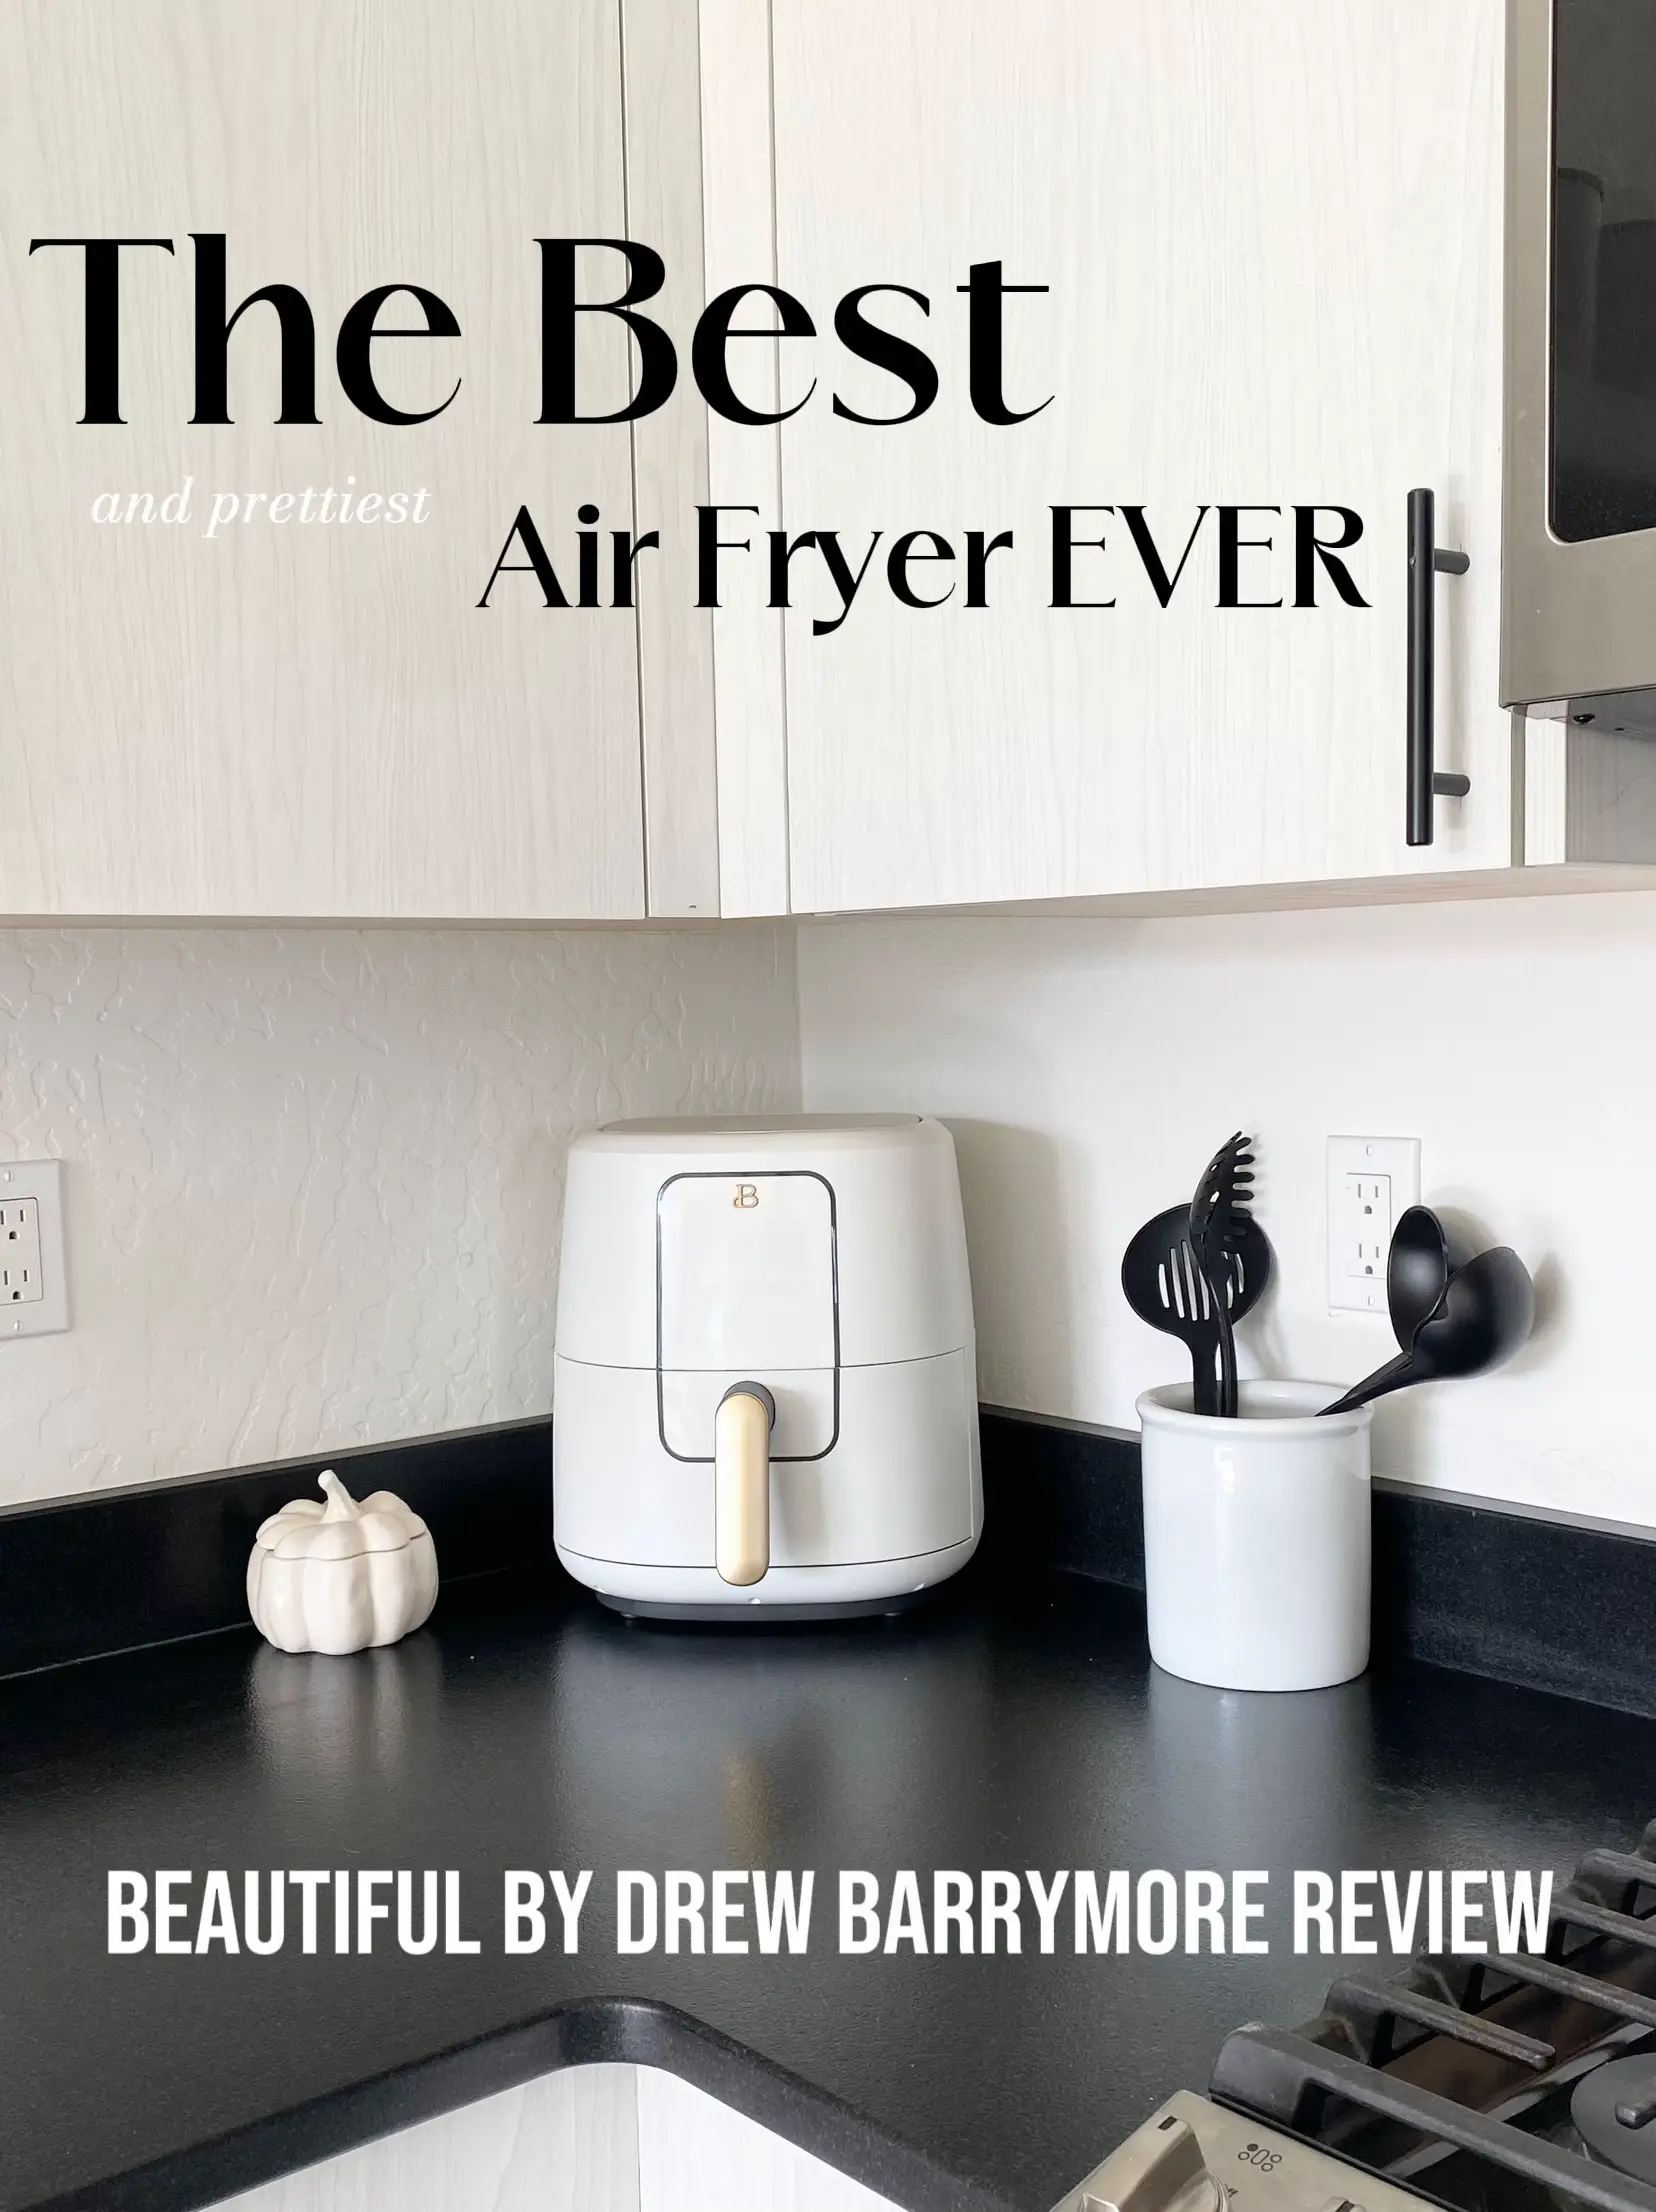 Drew Barrymore's Air Fryer Is the Prettiest Kitchen Appliance We